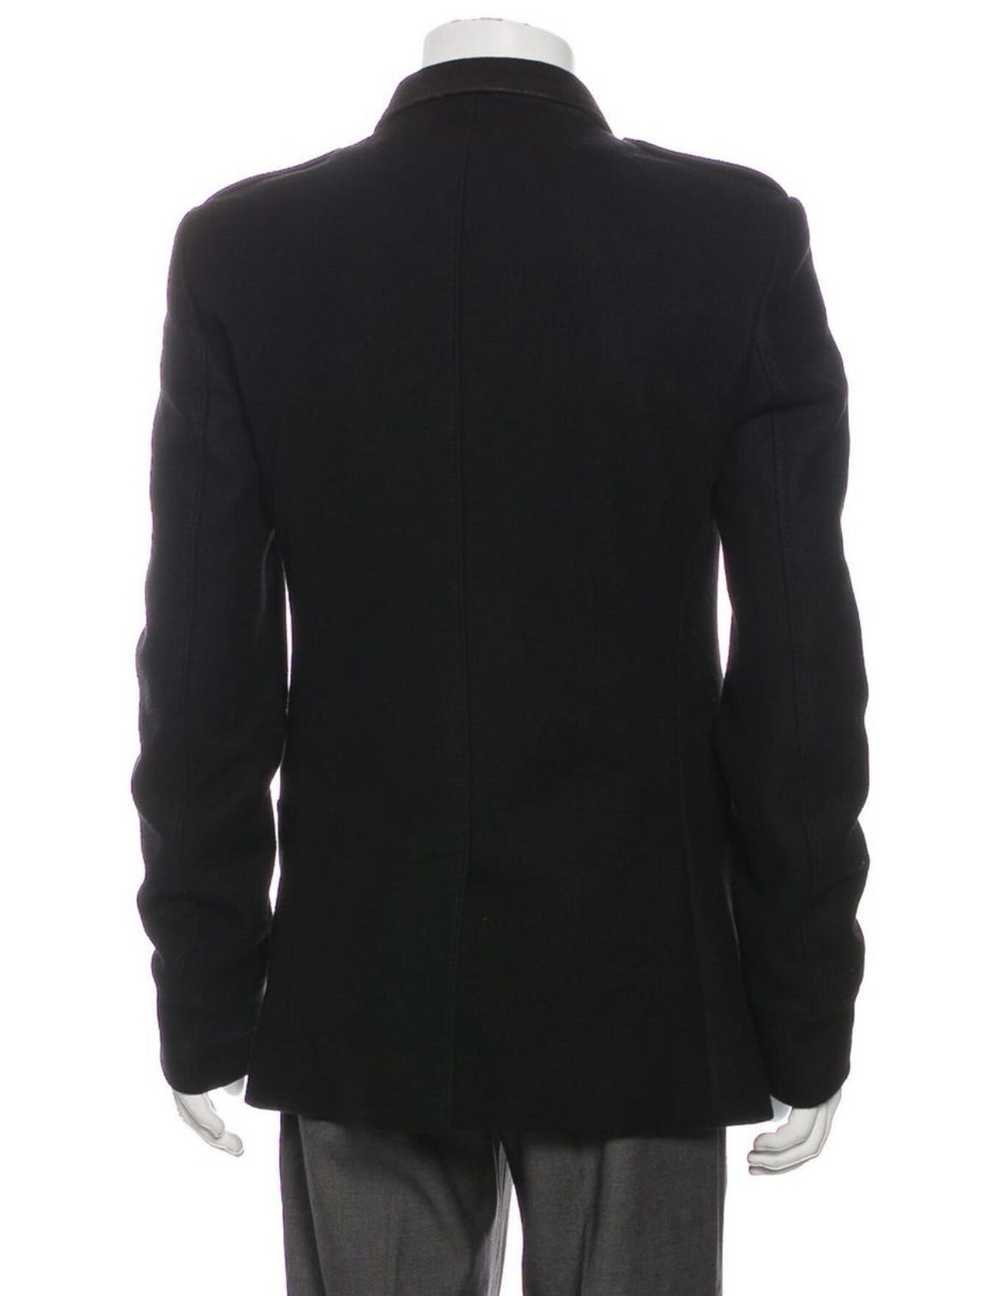 Dior × Hedi Slimane Vintage 2006 jacket - image 2